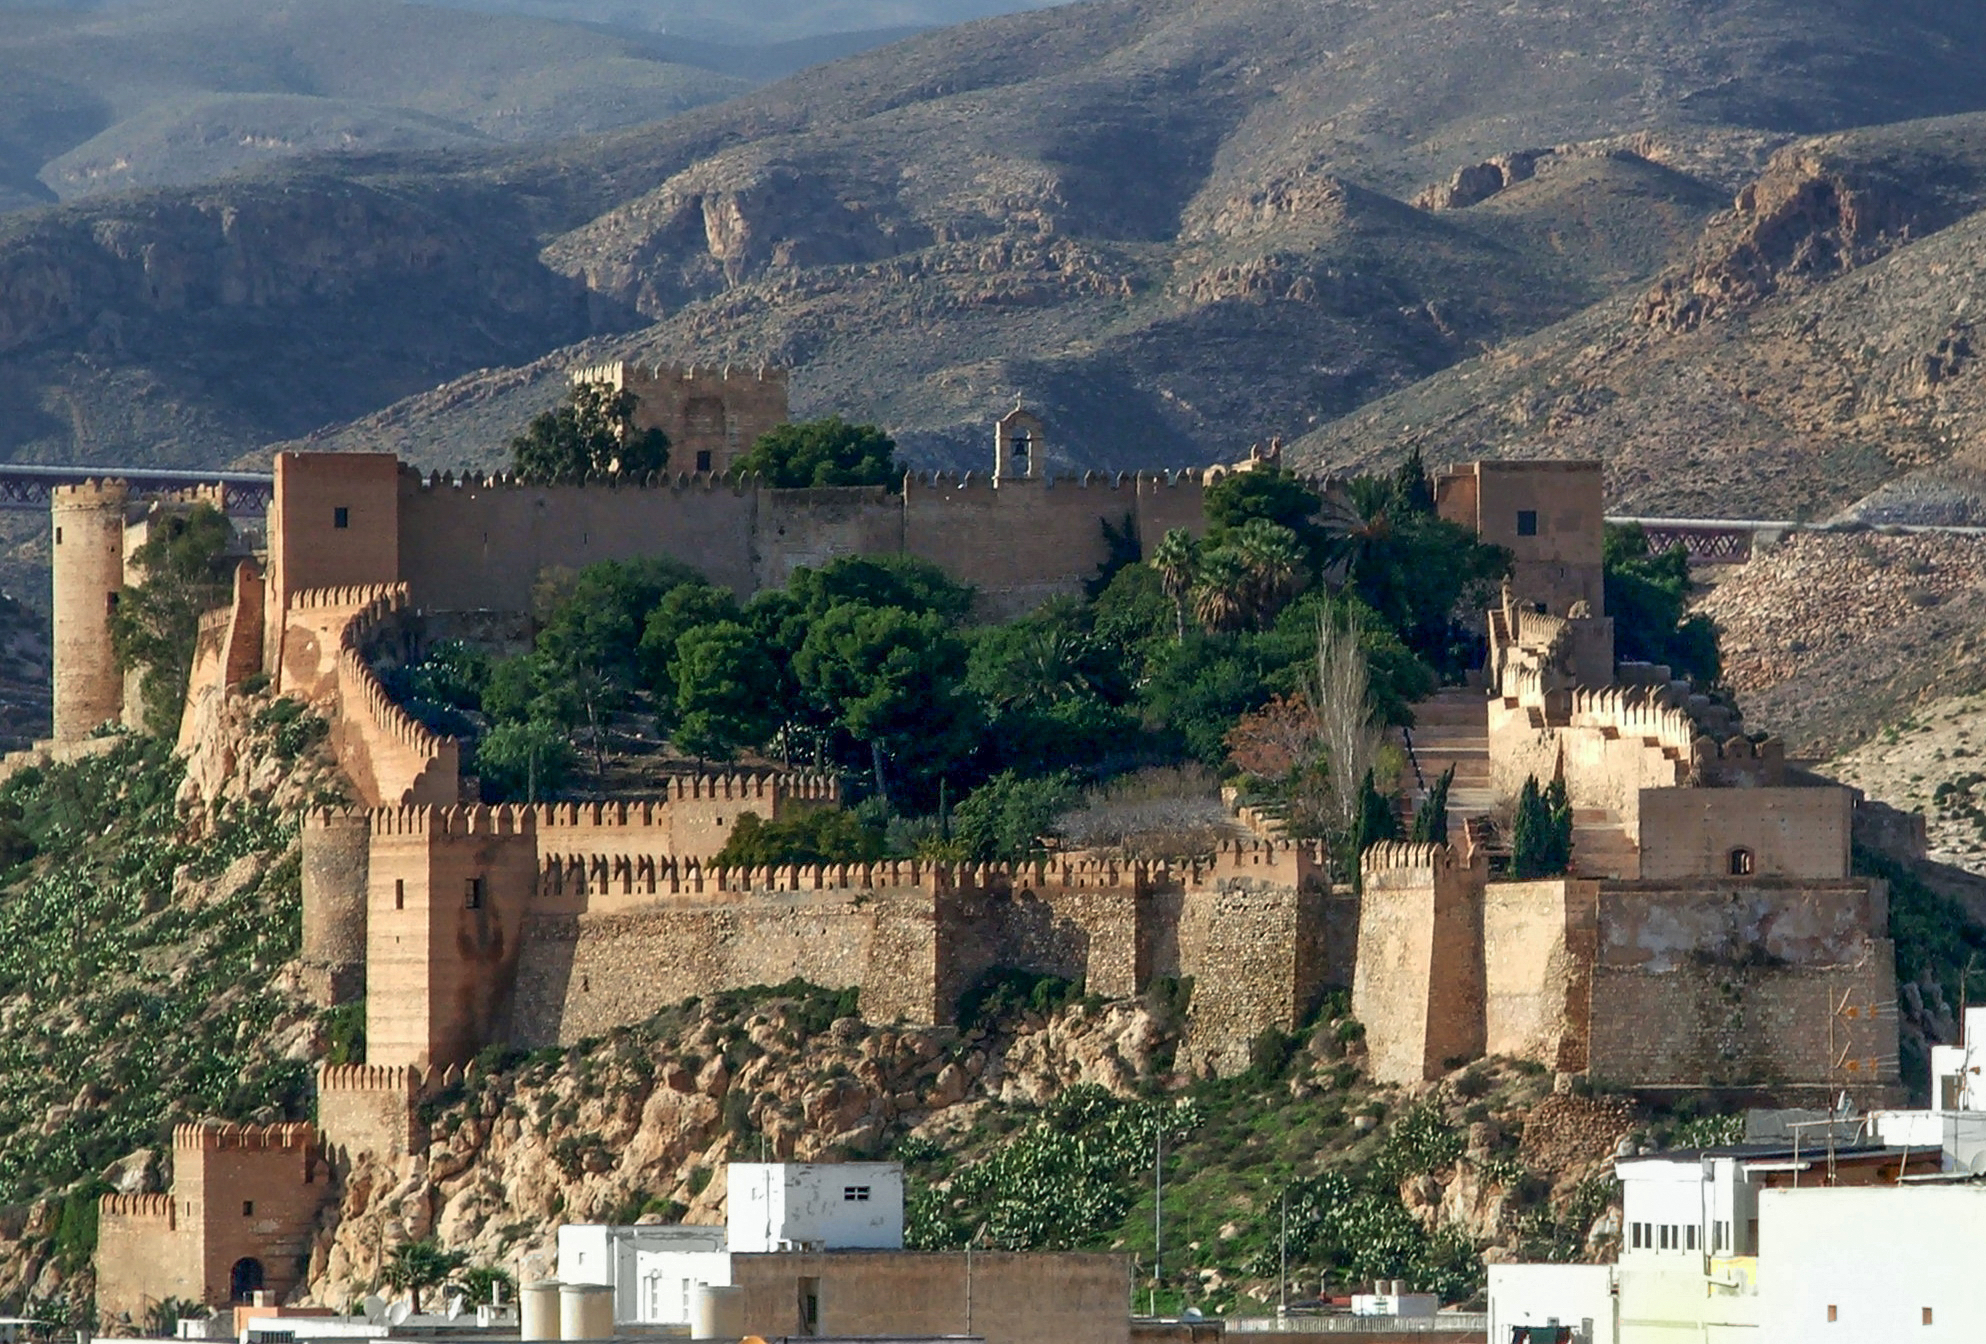 Main Palace, Alcazaba of Almería (MEGT)